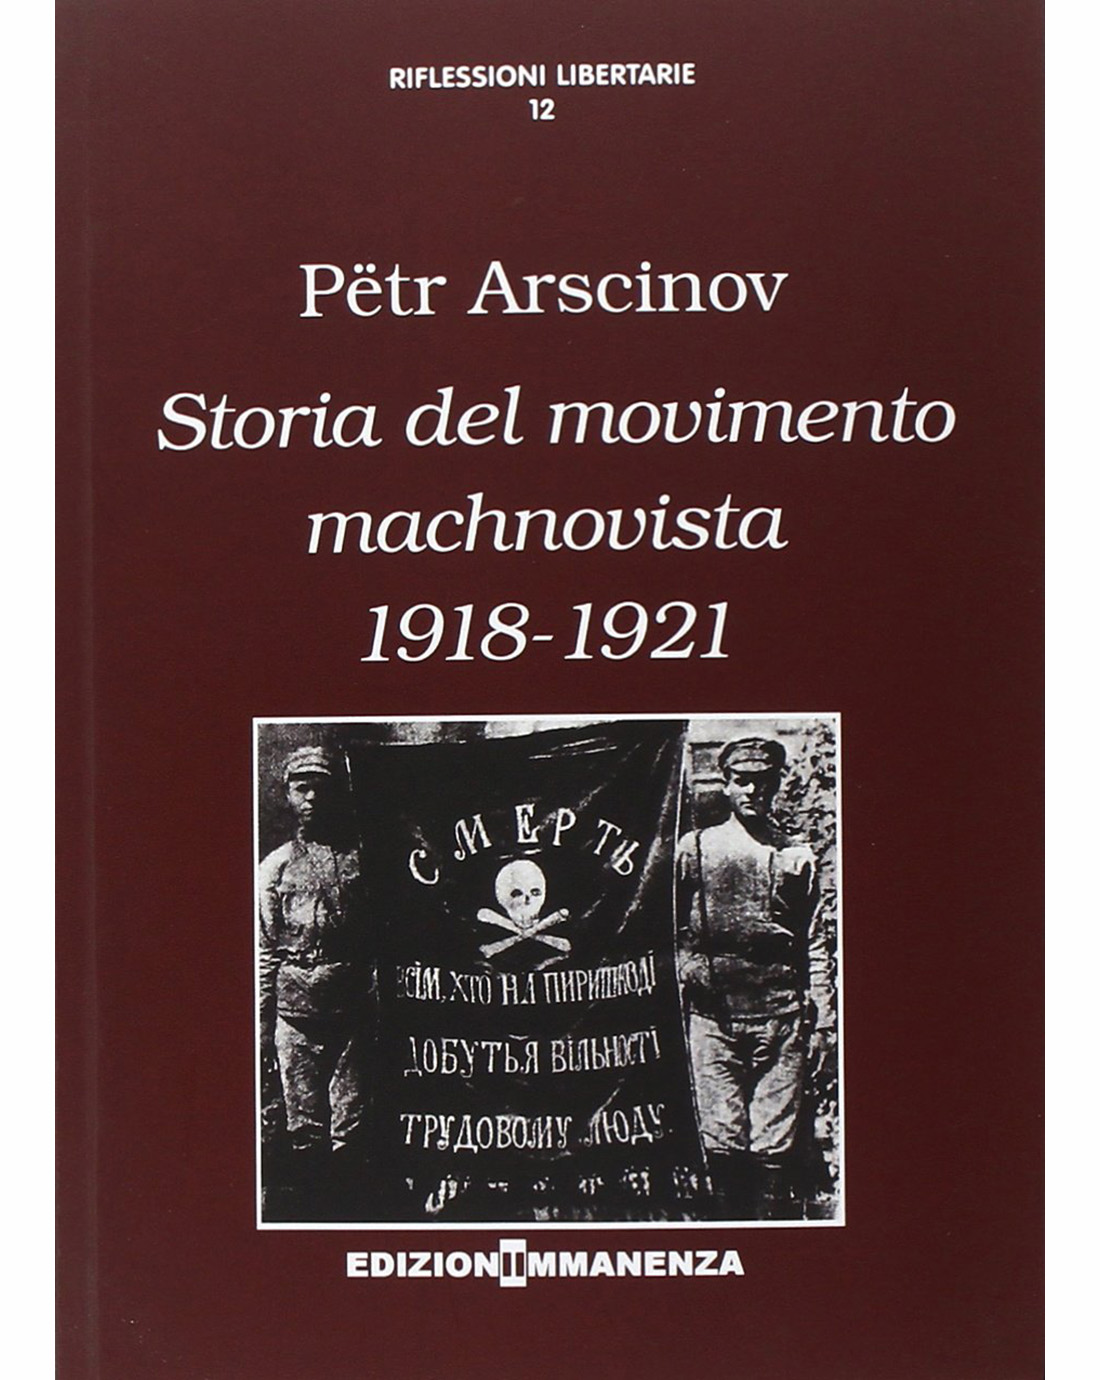 Storia del movimento machnovista (1918-1921)